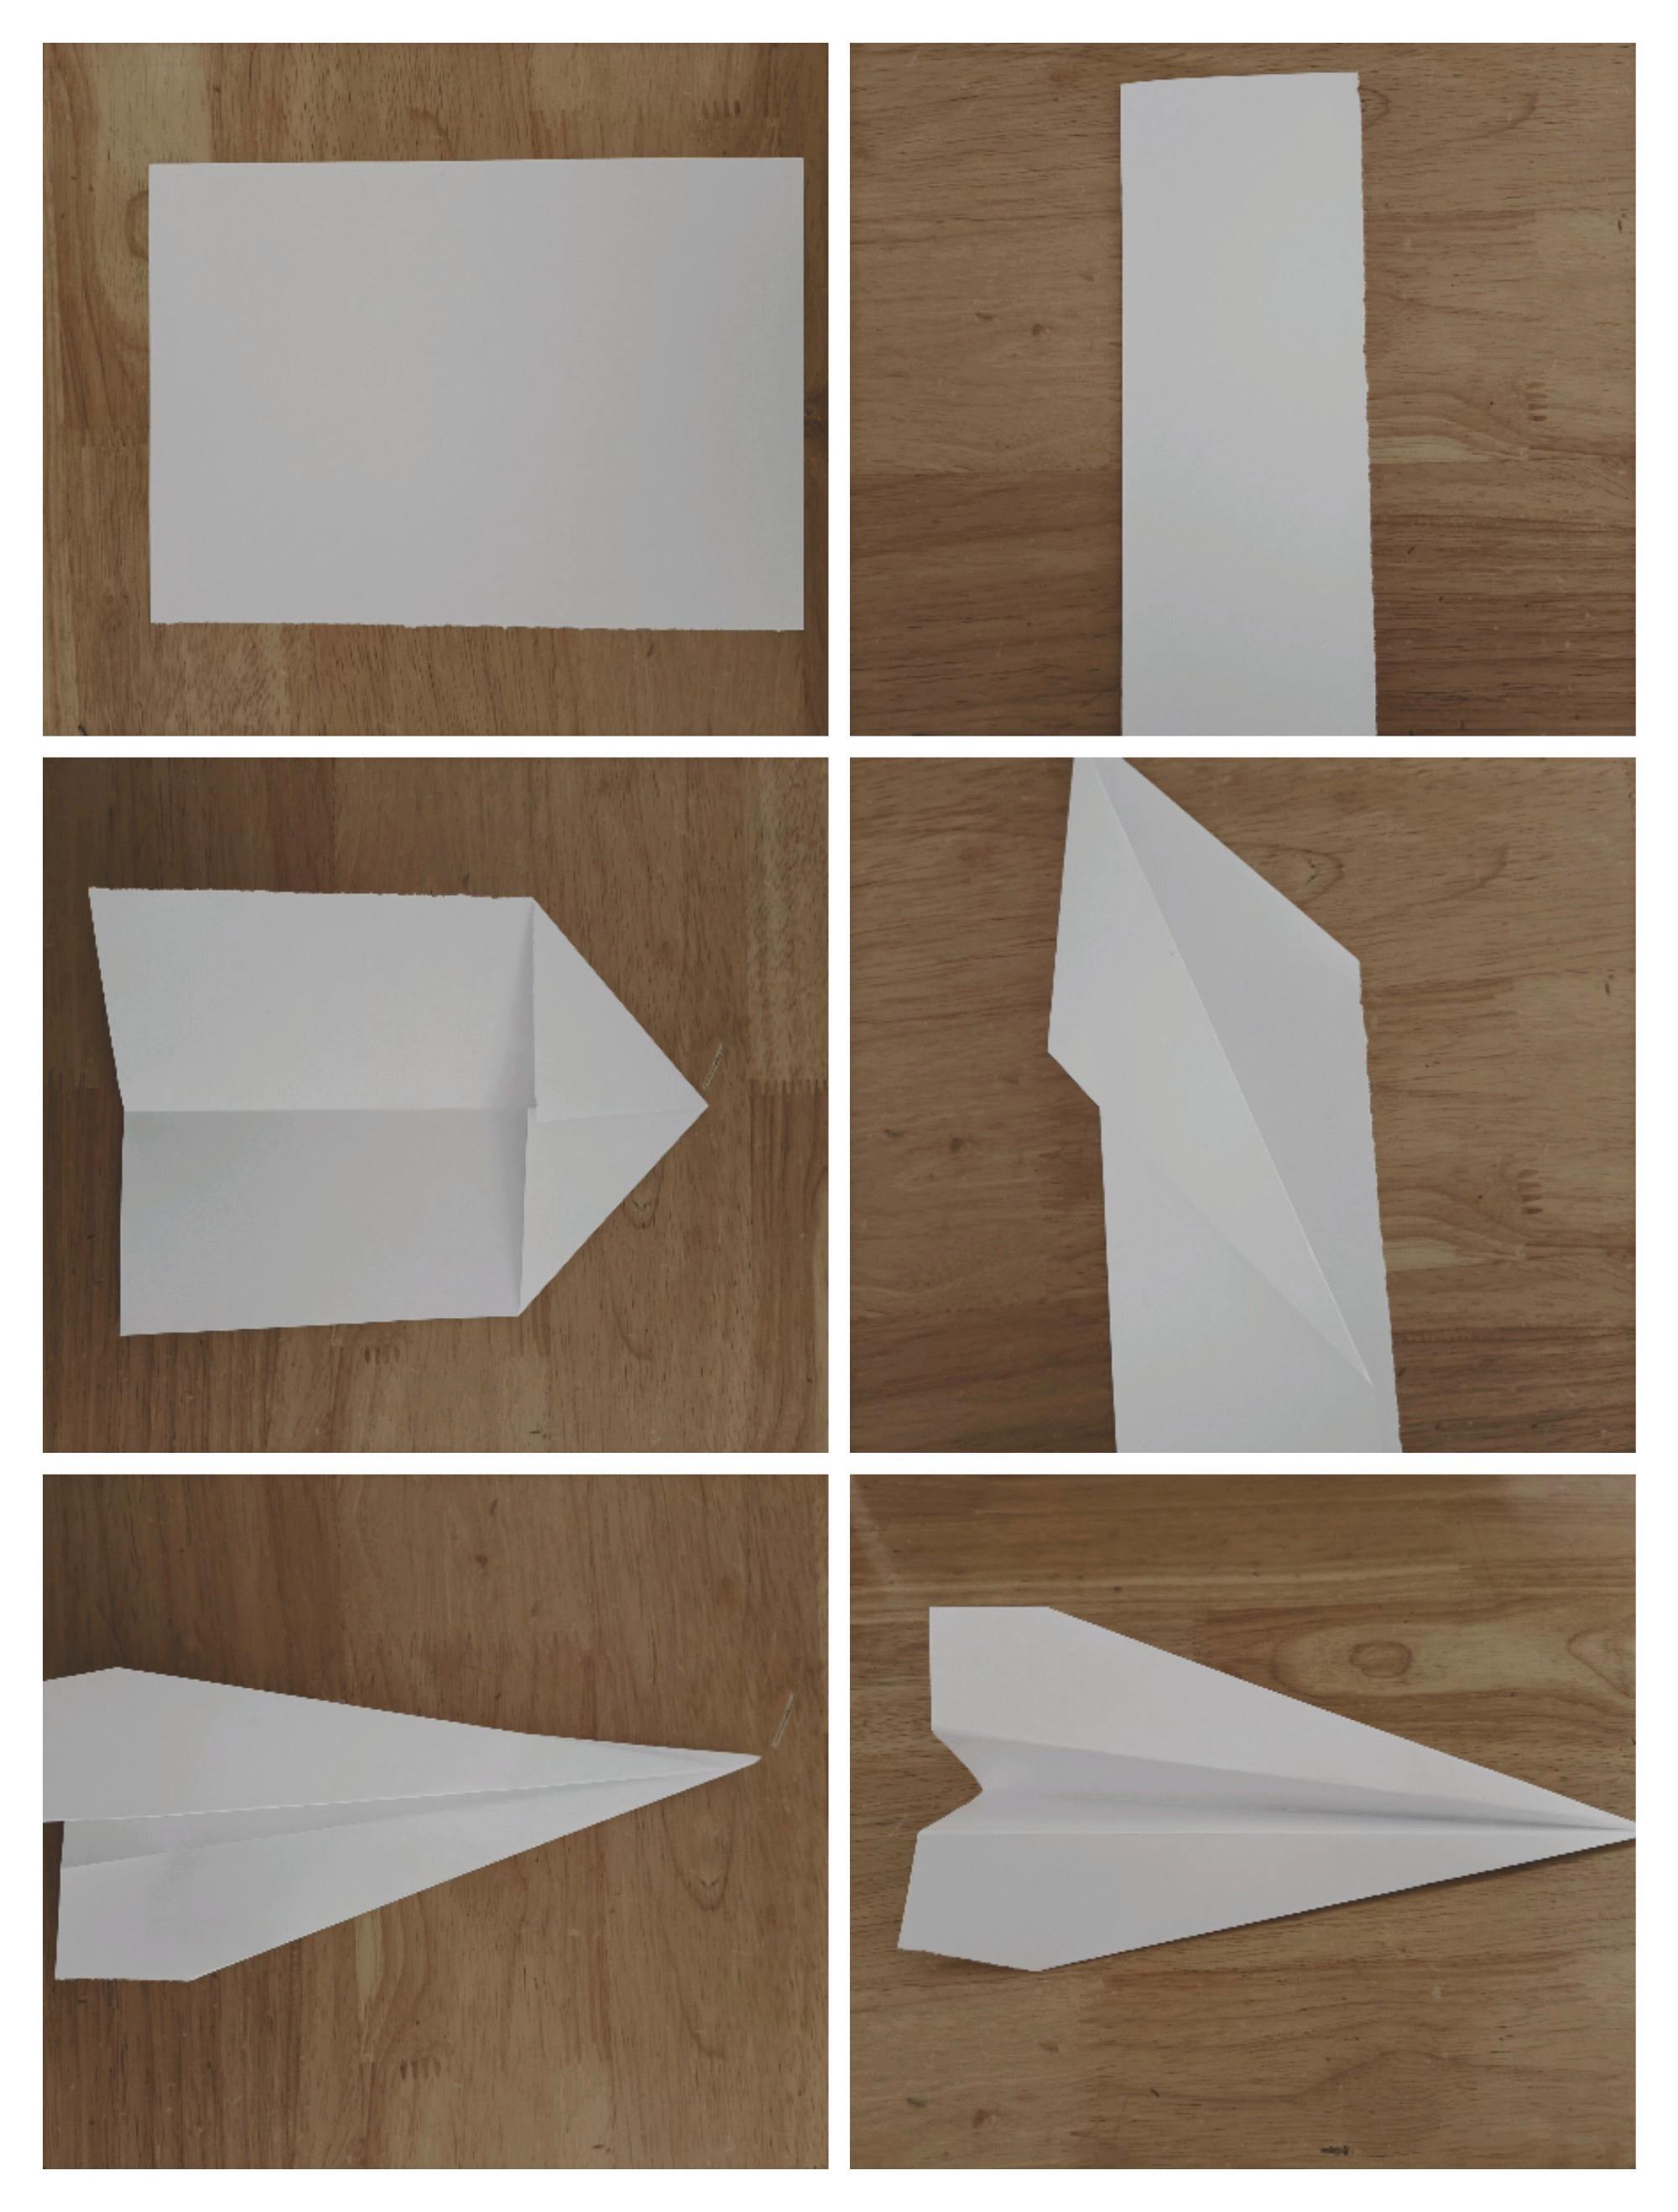 [纸飞机安装中文版怎么弄]纸飞机安装中文版怎么弄的